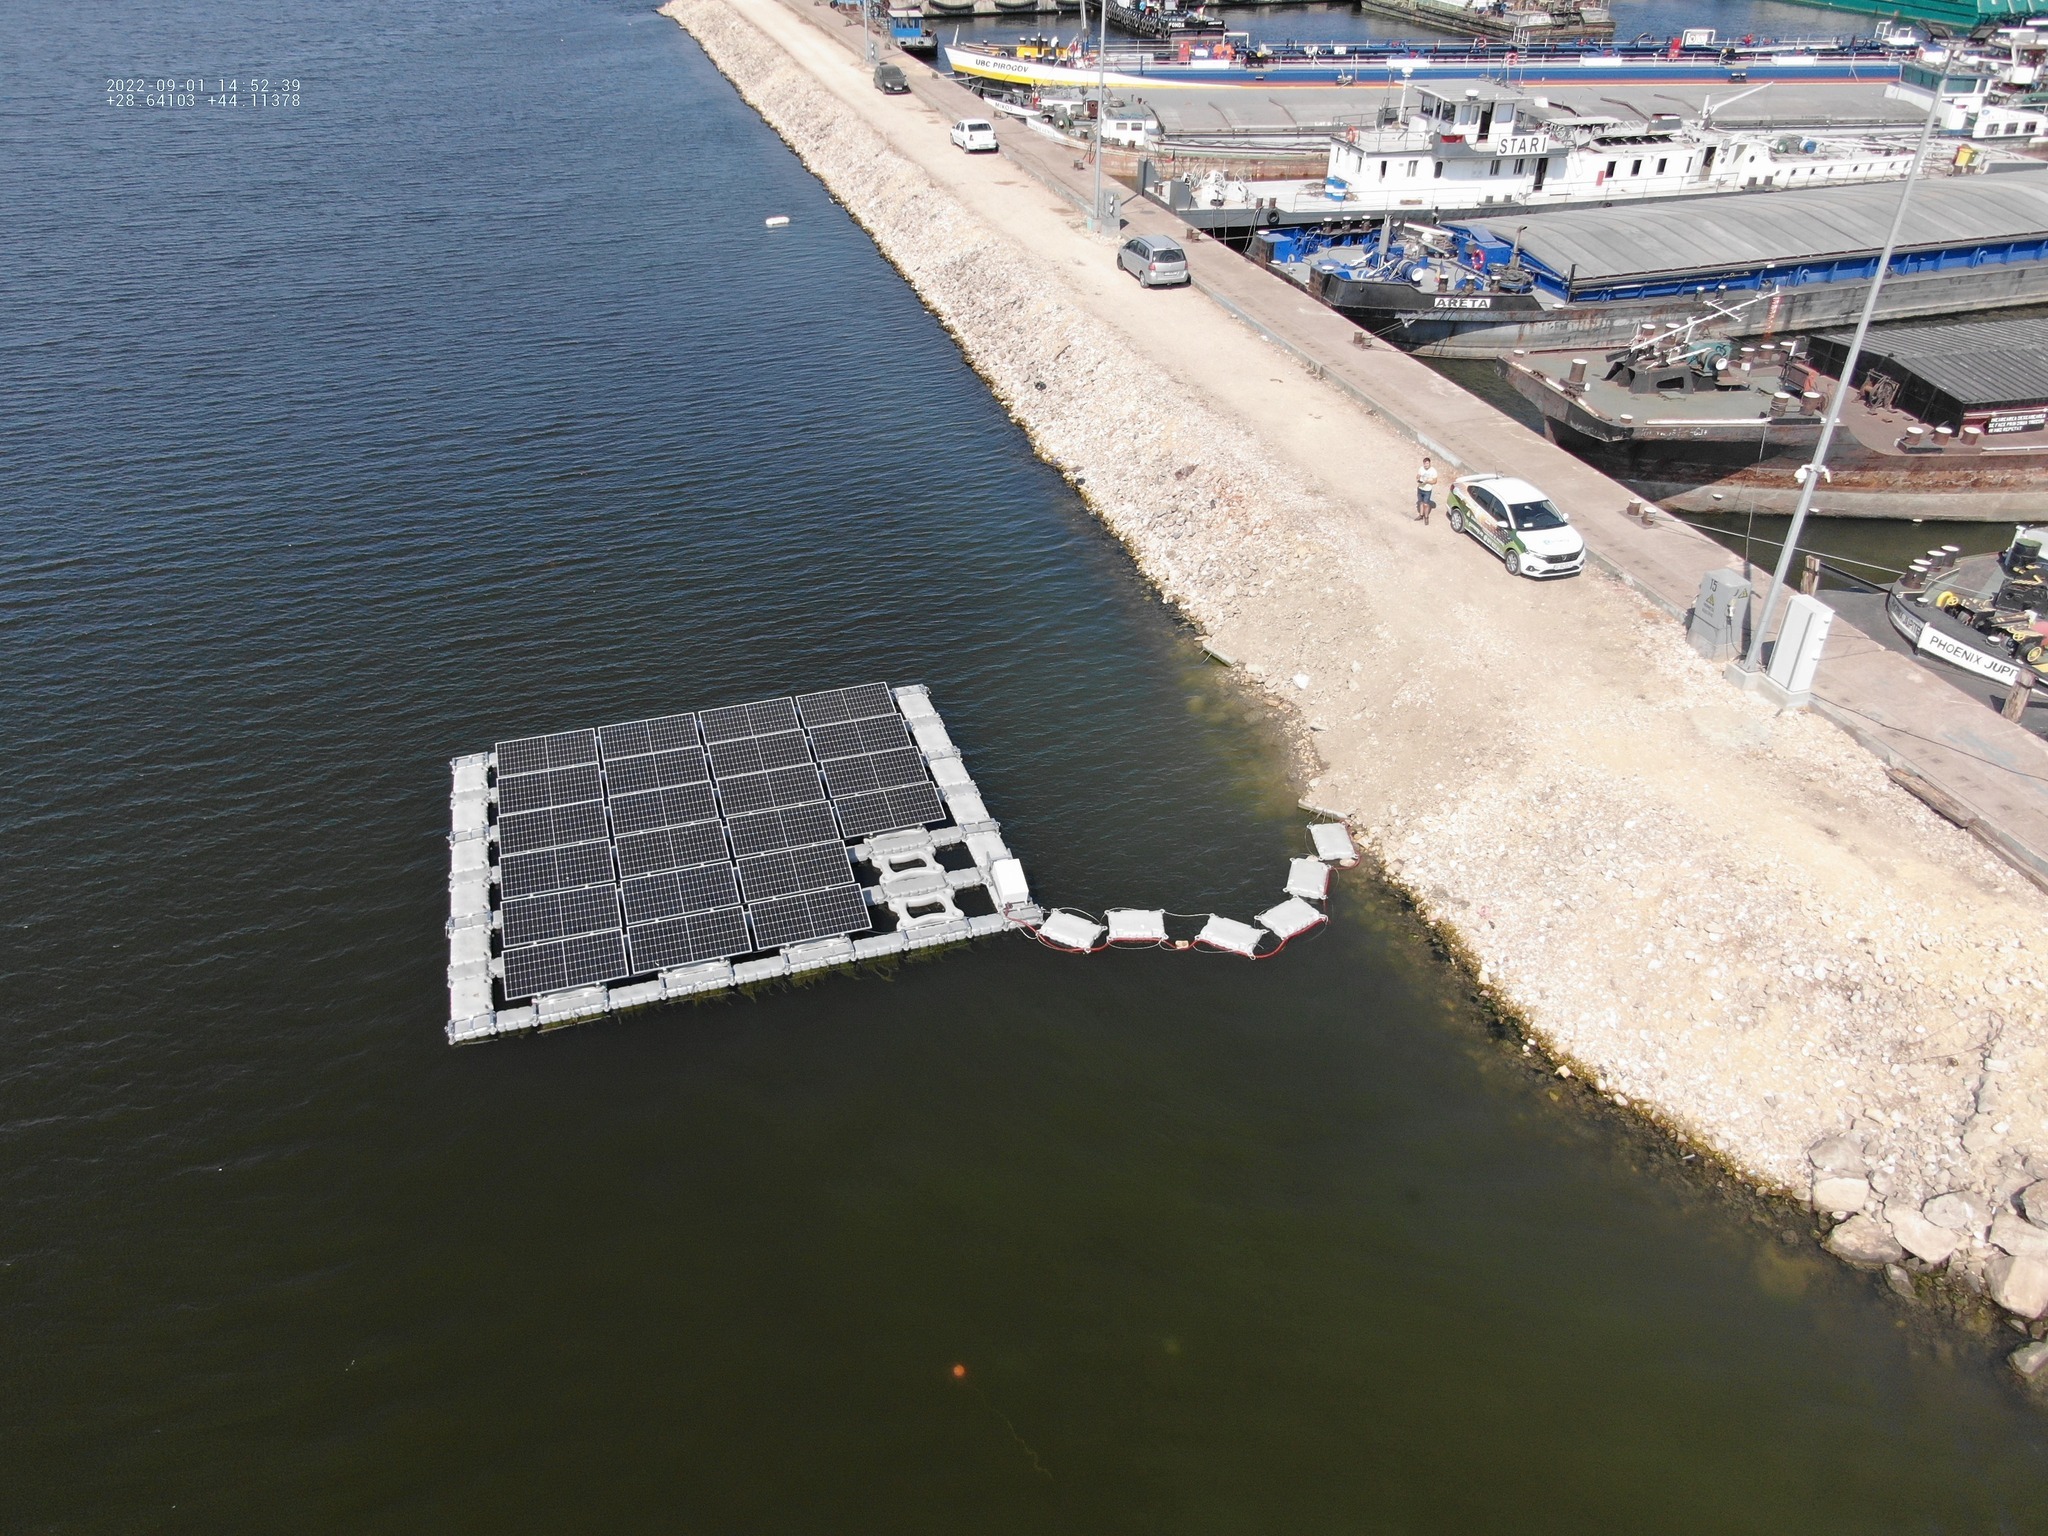 Parc fotovoltaic, în premieră în Portul Constanţa / Va alimenta zona danei 99 şi prelungirea acesteia, pe partea de iluminat public şi remorchere  – FOTO